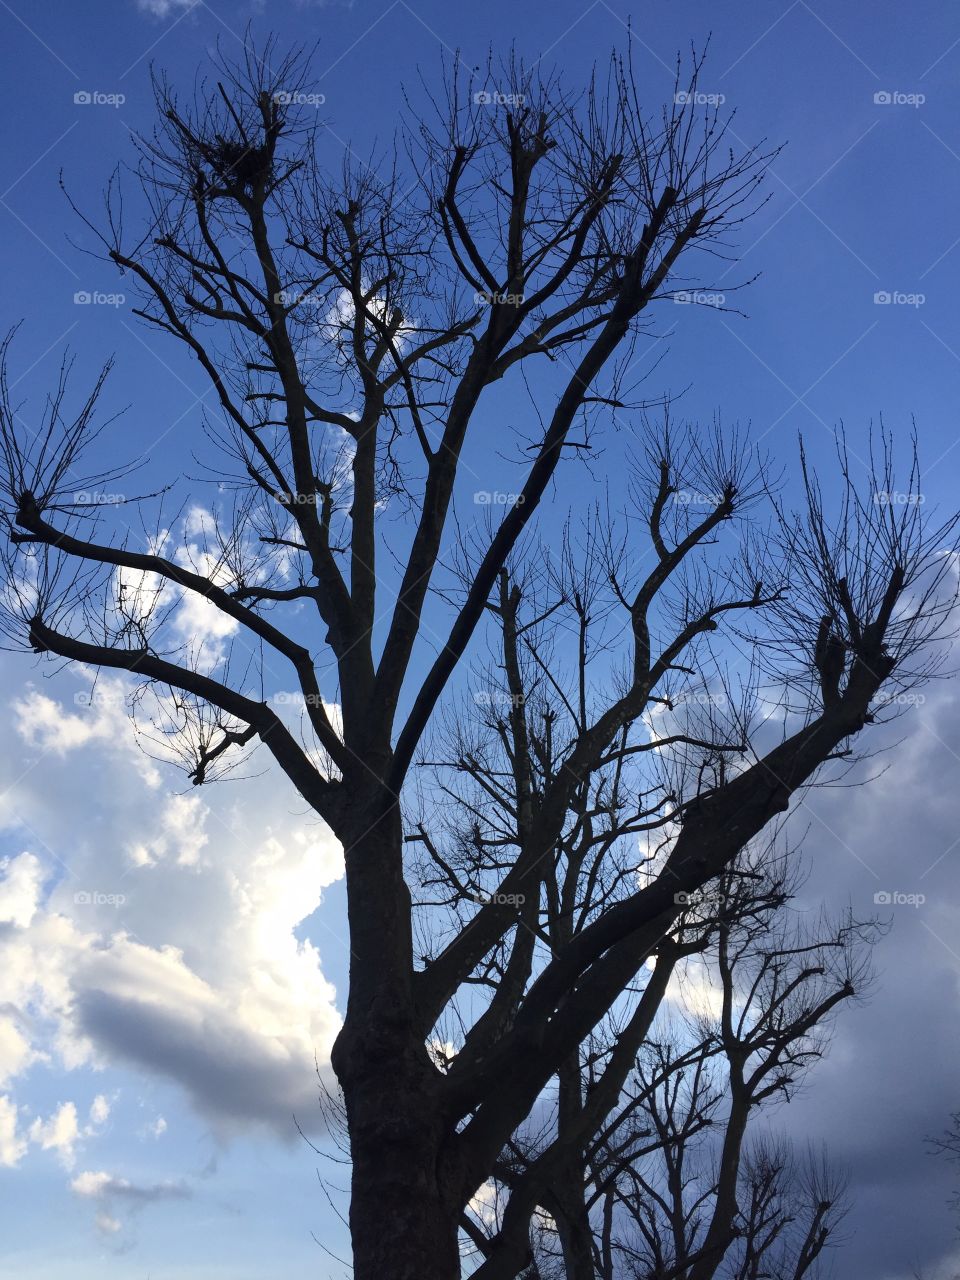 Trees on sky